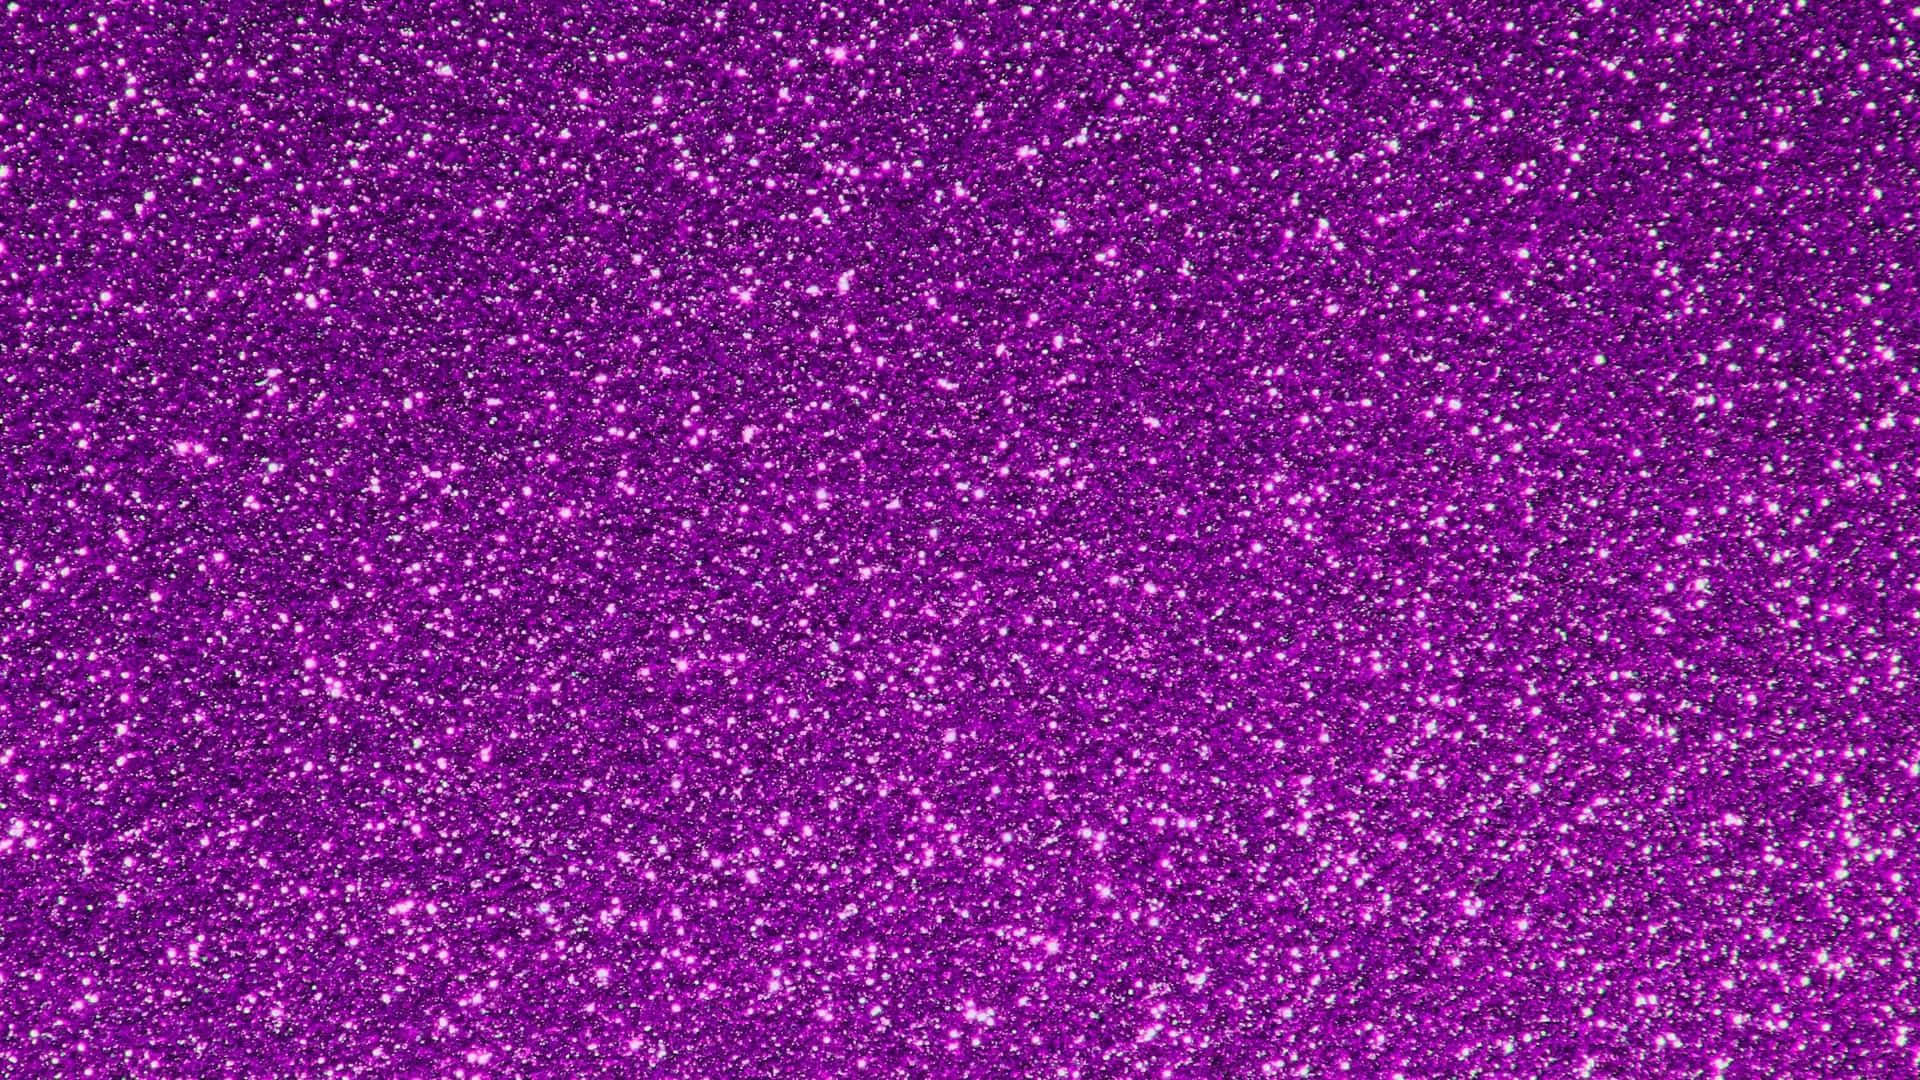 Shine bright with Purple Glitter! Wallpaper